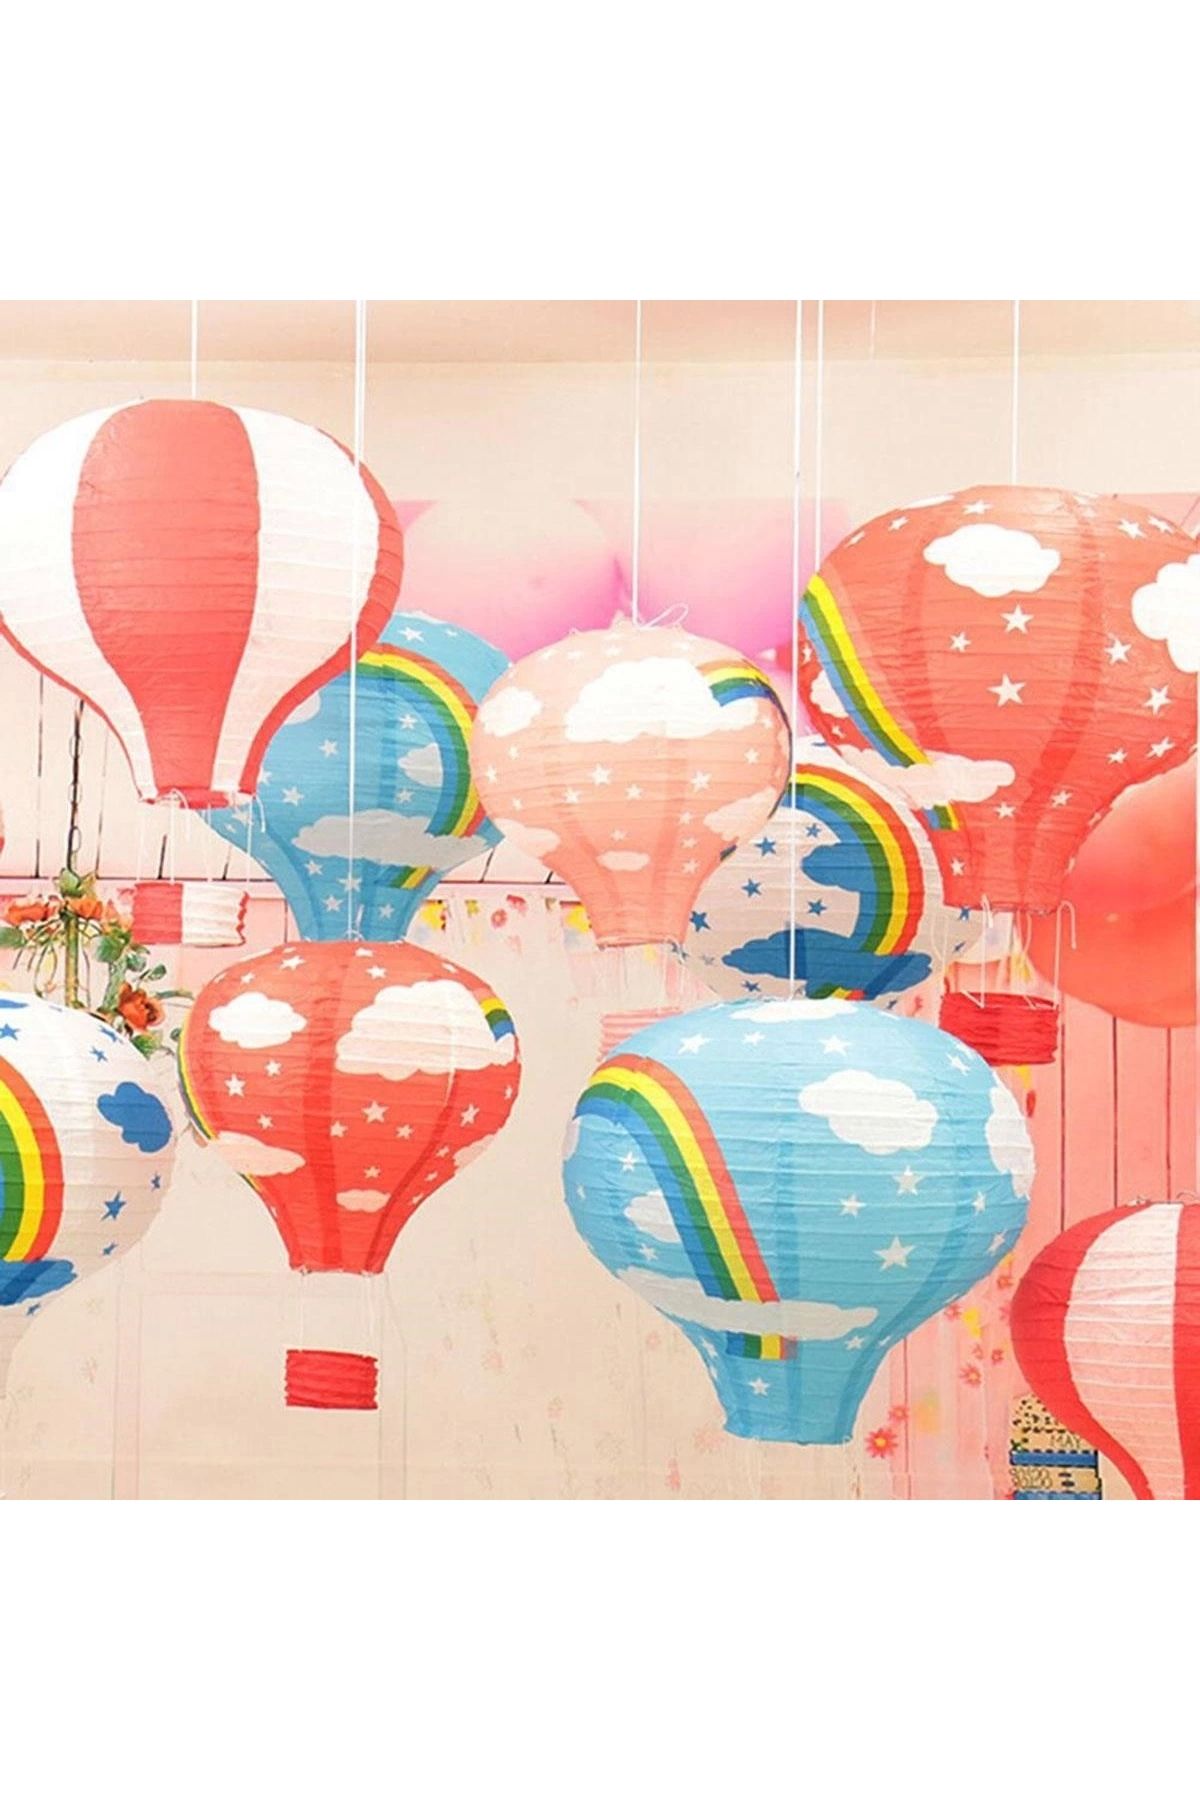 Go İthalat Dekoratif Renkli Kağıt Dilek Feneri Balonu Renkli Uçan Balon (4462)